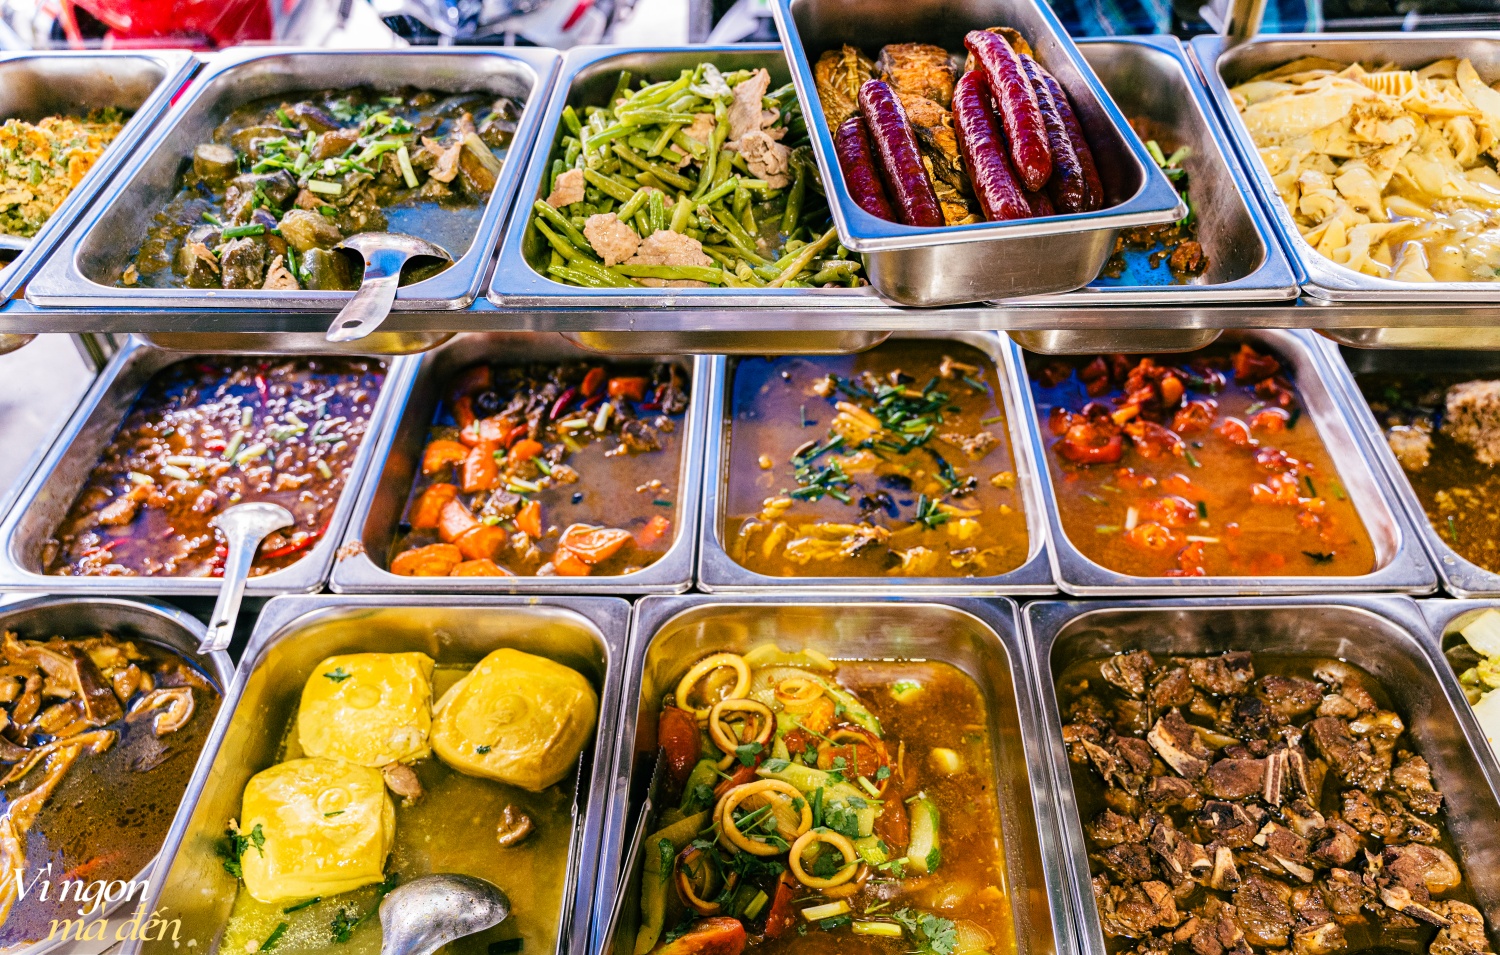 Đi ăn cơm bình dân kiểu người Hoa: Cửa tiệm bán 3 đời mỗi ngày làm hơn 30 món chất lượng, đông khách đến nỗi không dám mở trên ứng dụng giao đồ ăn - Ảnh 1.